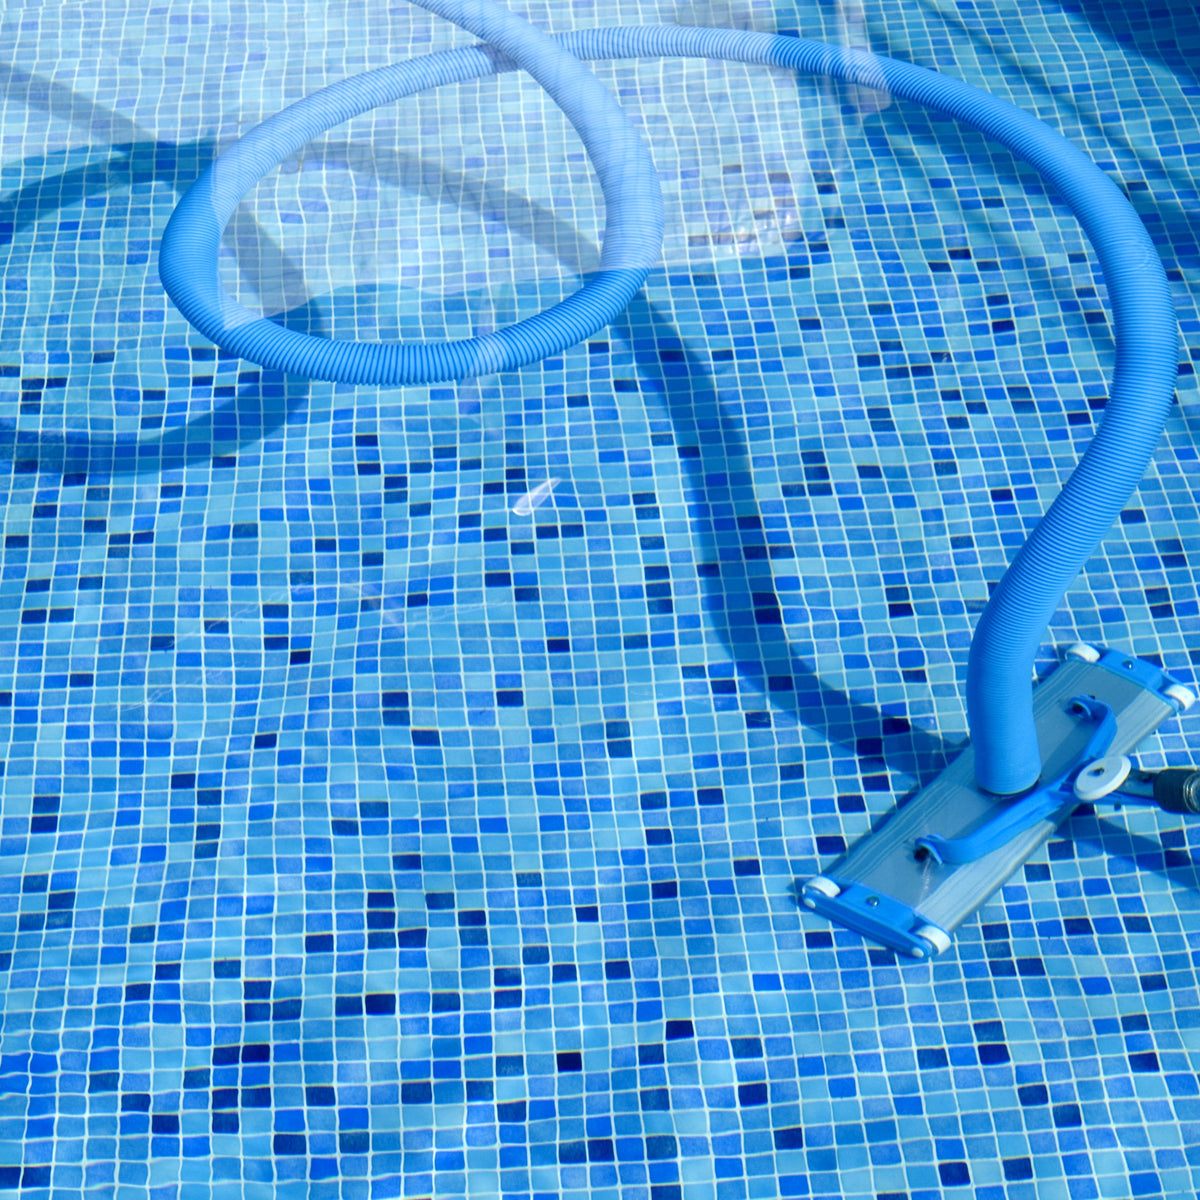 Tuyau aspiration Professionnel piscine, bleu - 10 m - Boutique de